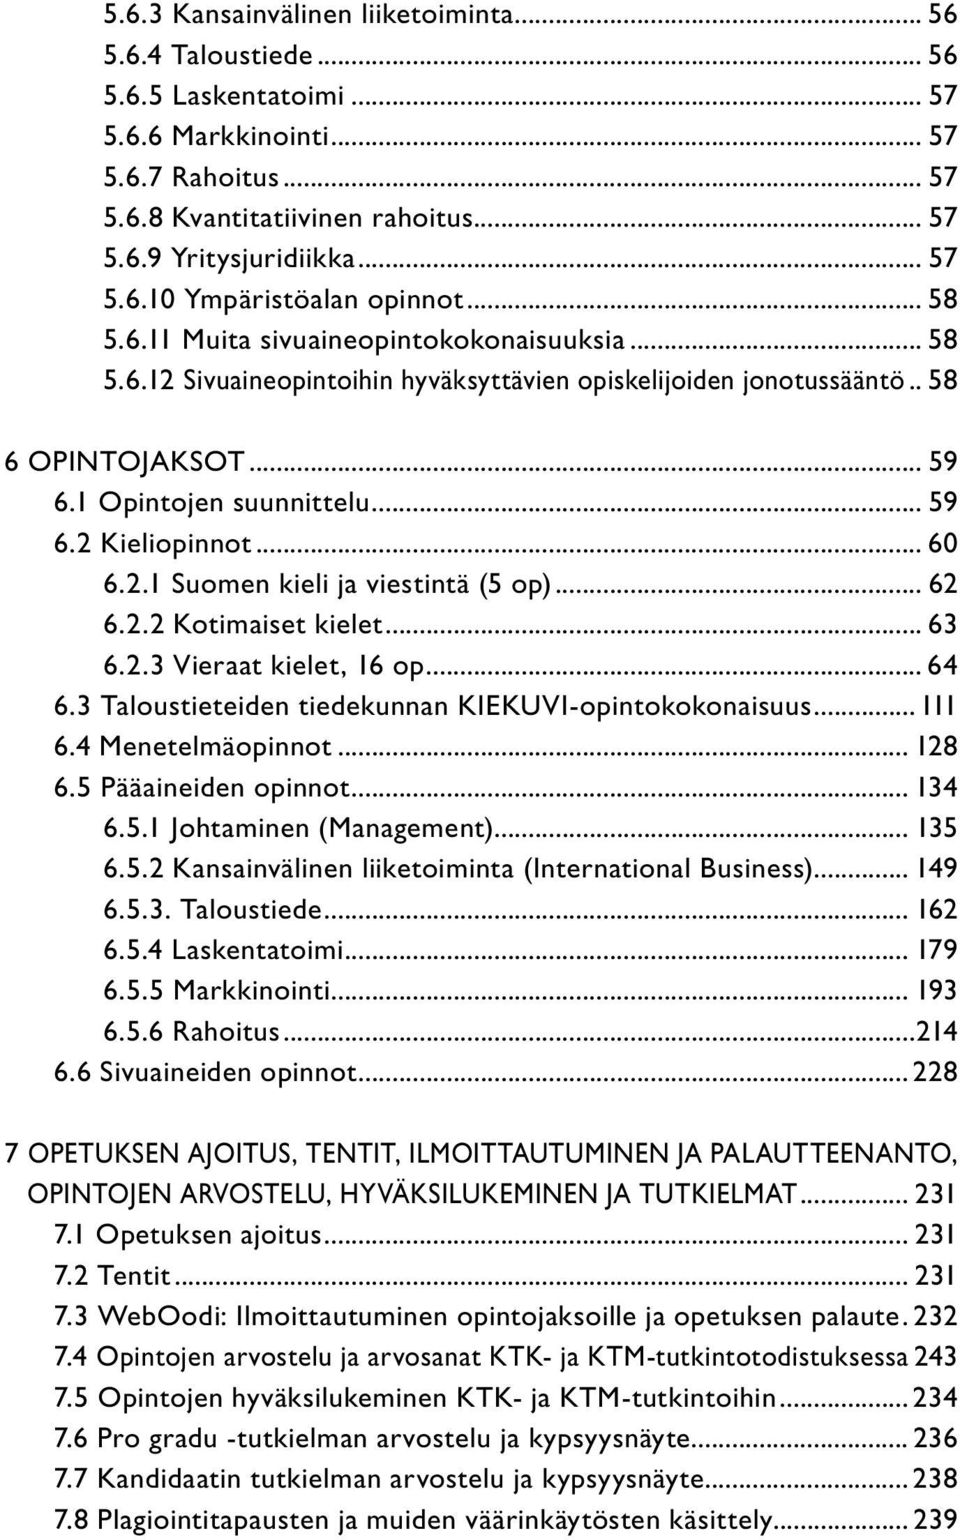 .. 59 6.2 Kieliopinnot... 60 6.2.1 Suomen kieli ja viestintä (5 op)... 62 6.2.2 Kotimaiset kielet... 63 6.2.3 Vieraat kielet, 16 op... 64 6.3 Taloustieteiden tiedekunnan KIEKUVI-opintokokonaisuus.